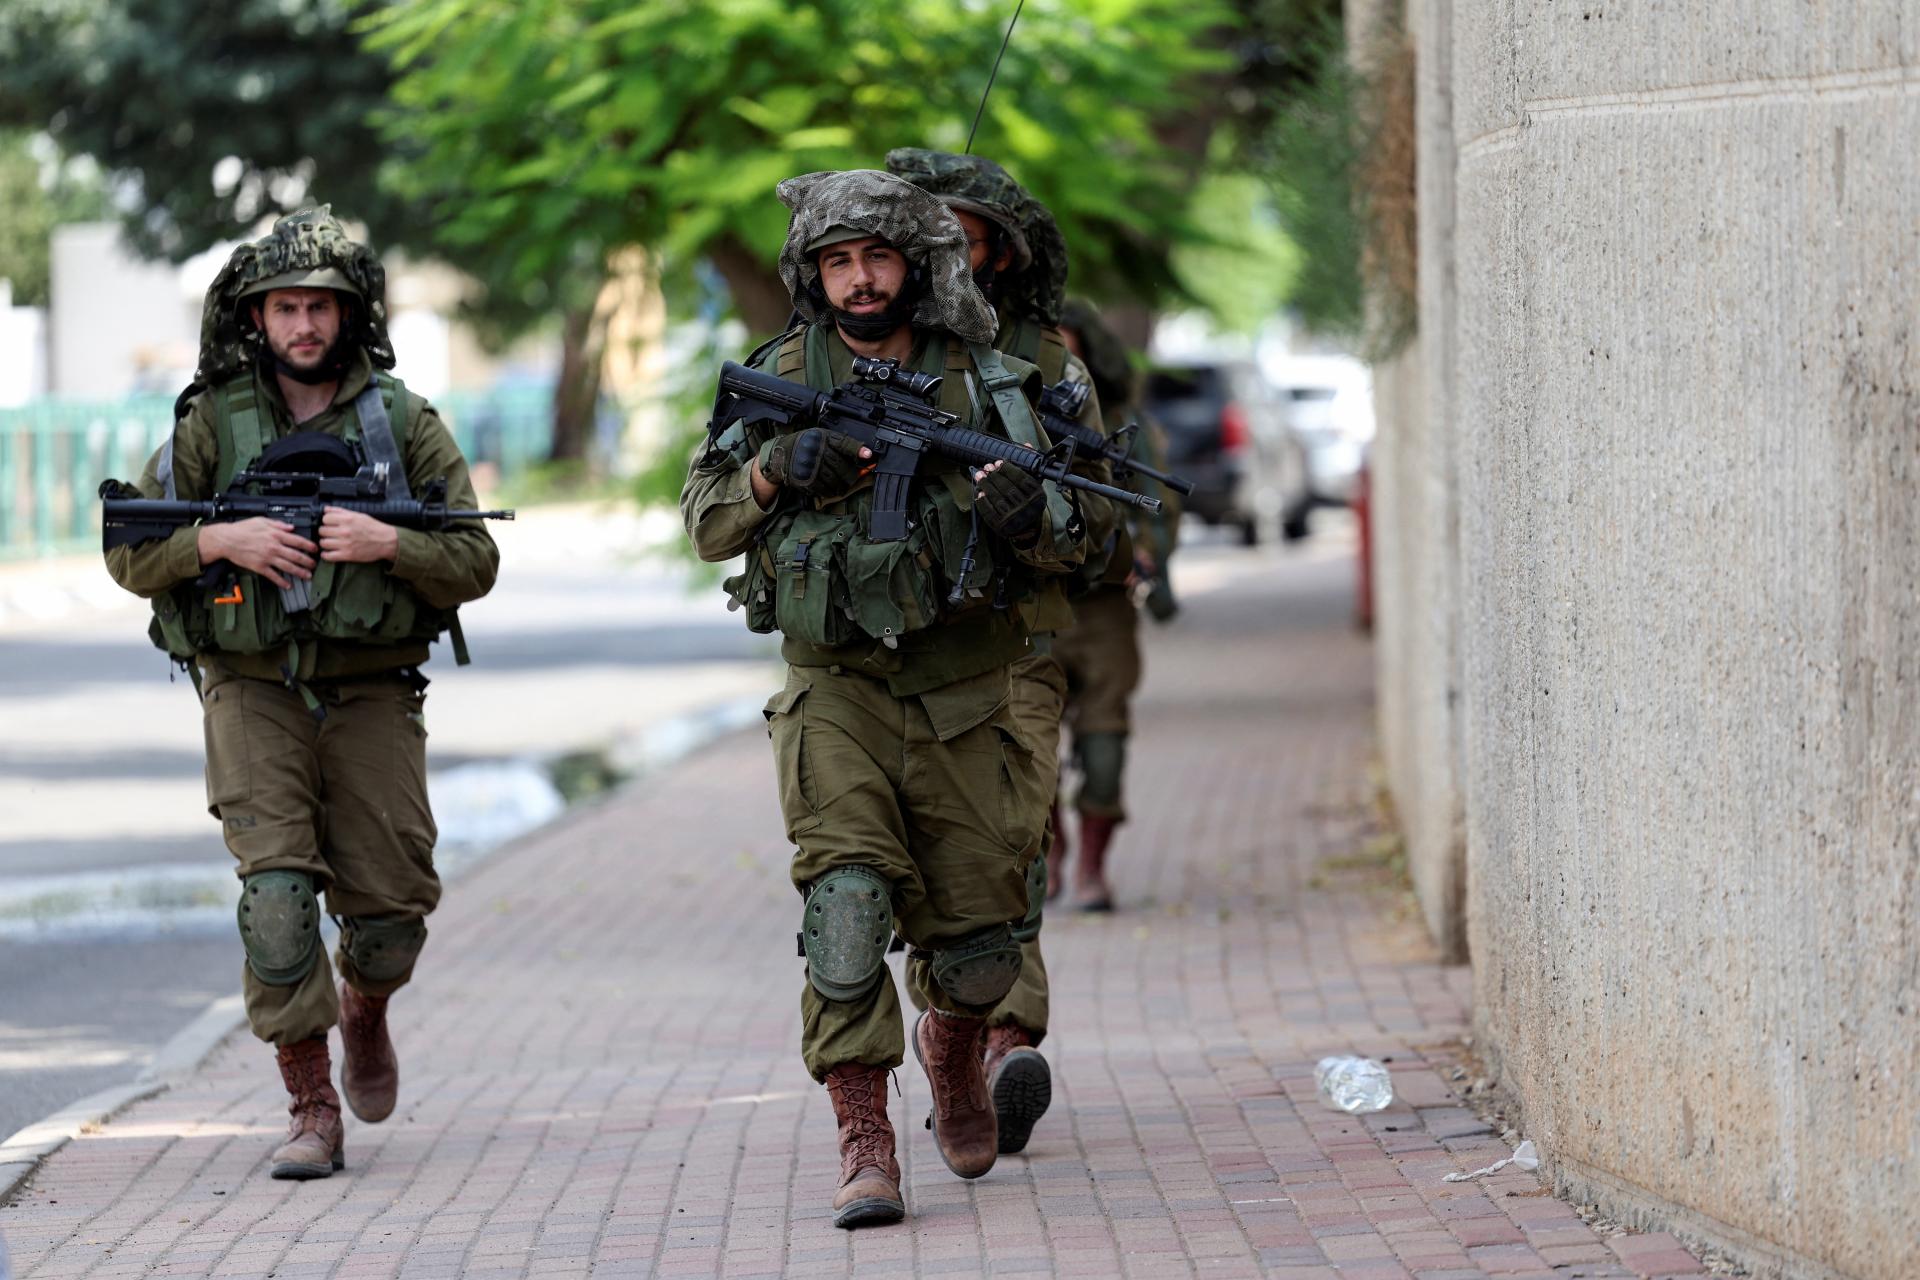 Izraelčanka oklamala teroristov. Hostila ich, kým nedorazila polícia